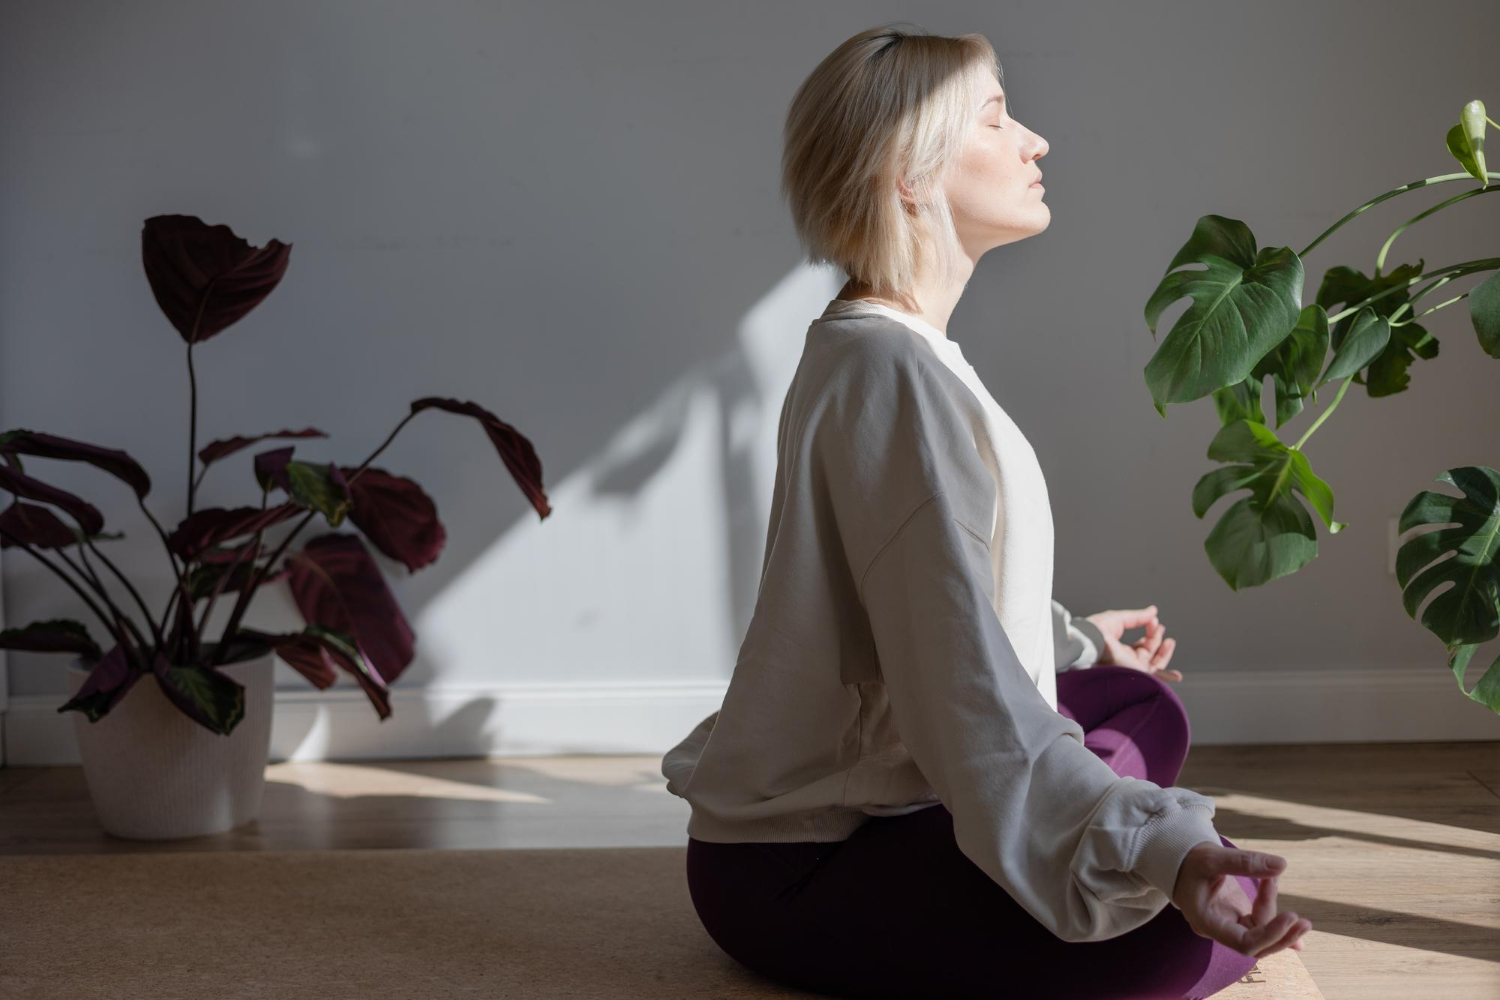 Mindfulness meditation træner evnen til at være til stede i nuet og mærke sanser, tanker og følelser